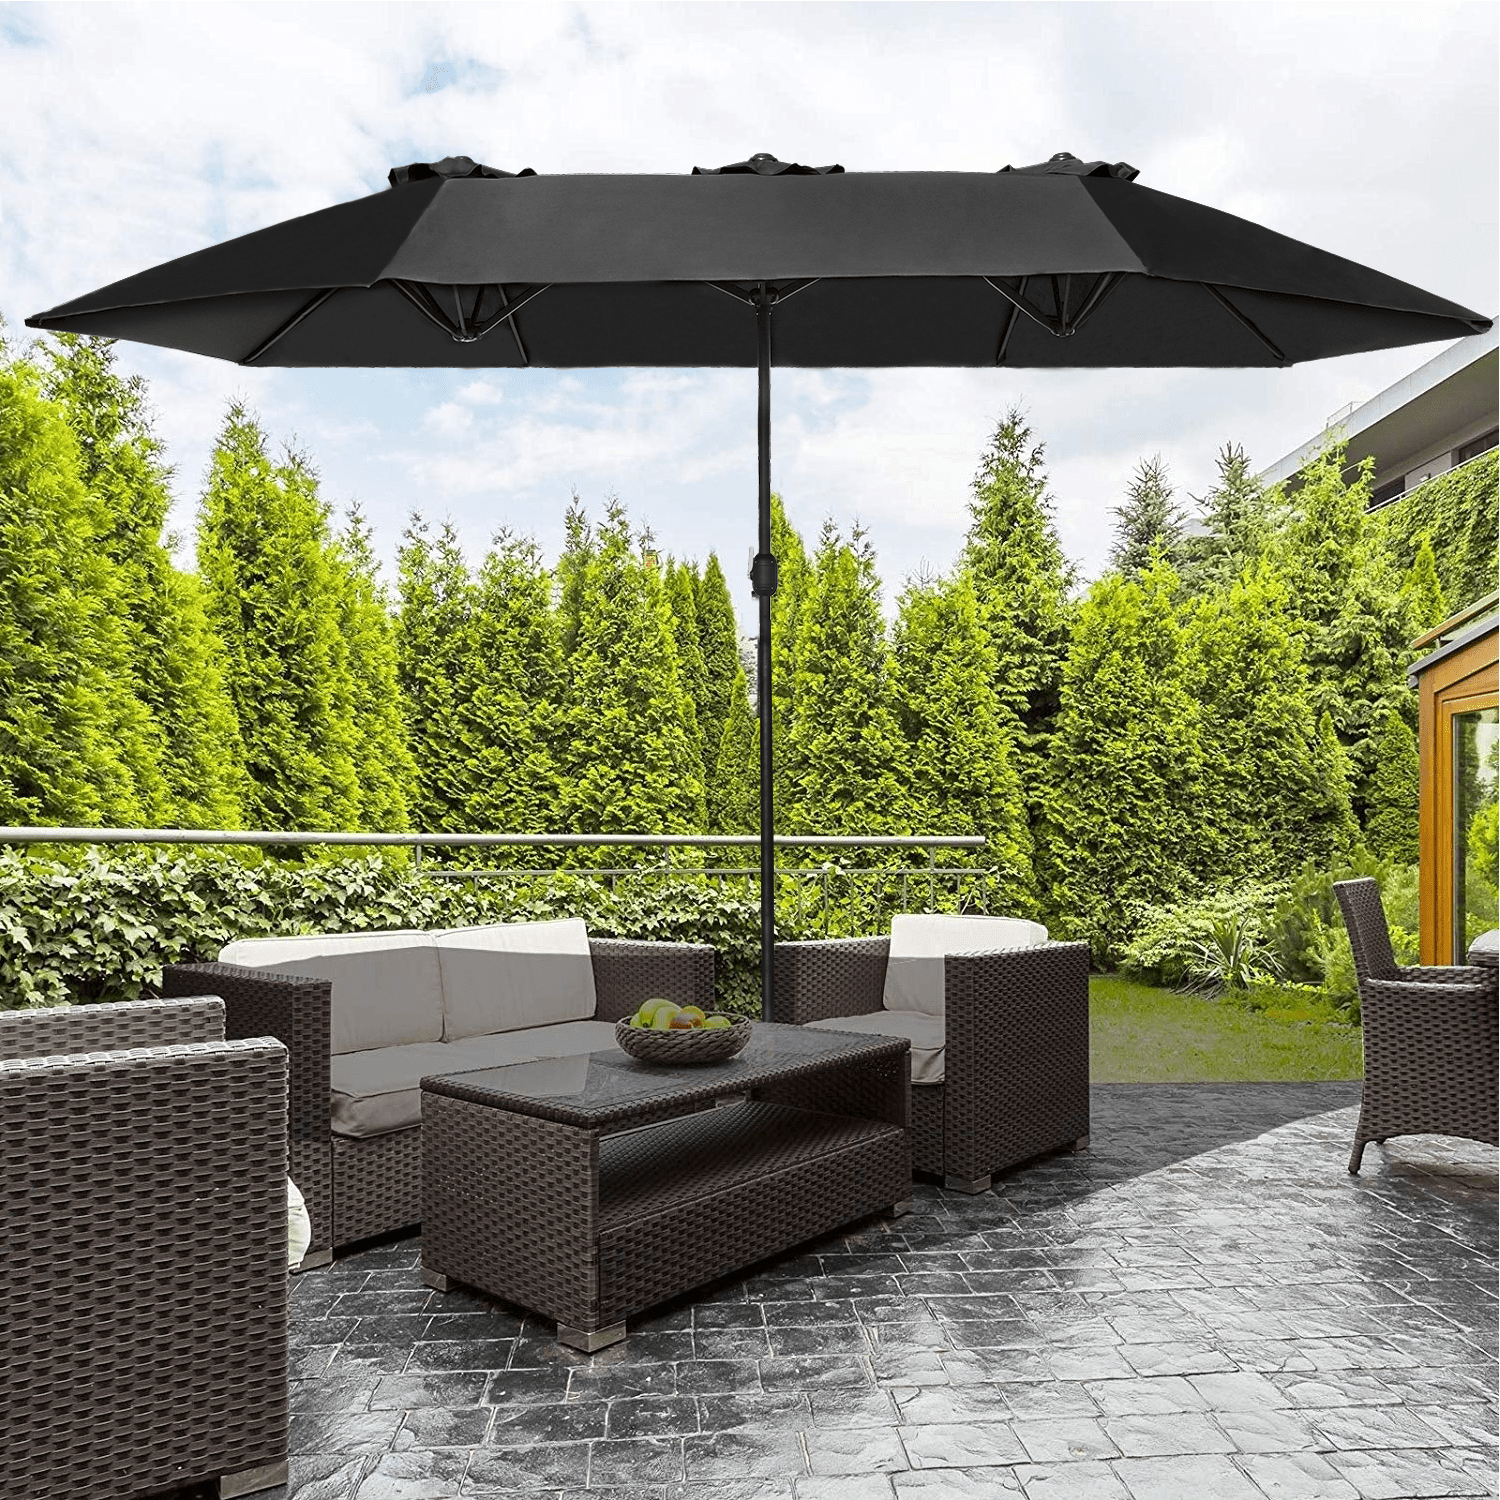 15ft Double-sided Twin Patio Umbrella Sun Shade Crank Outdoor Garden Market Grey